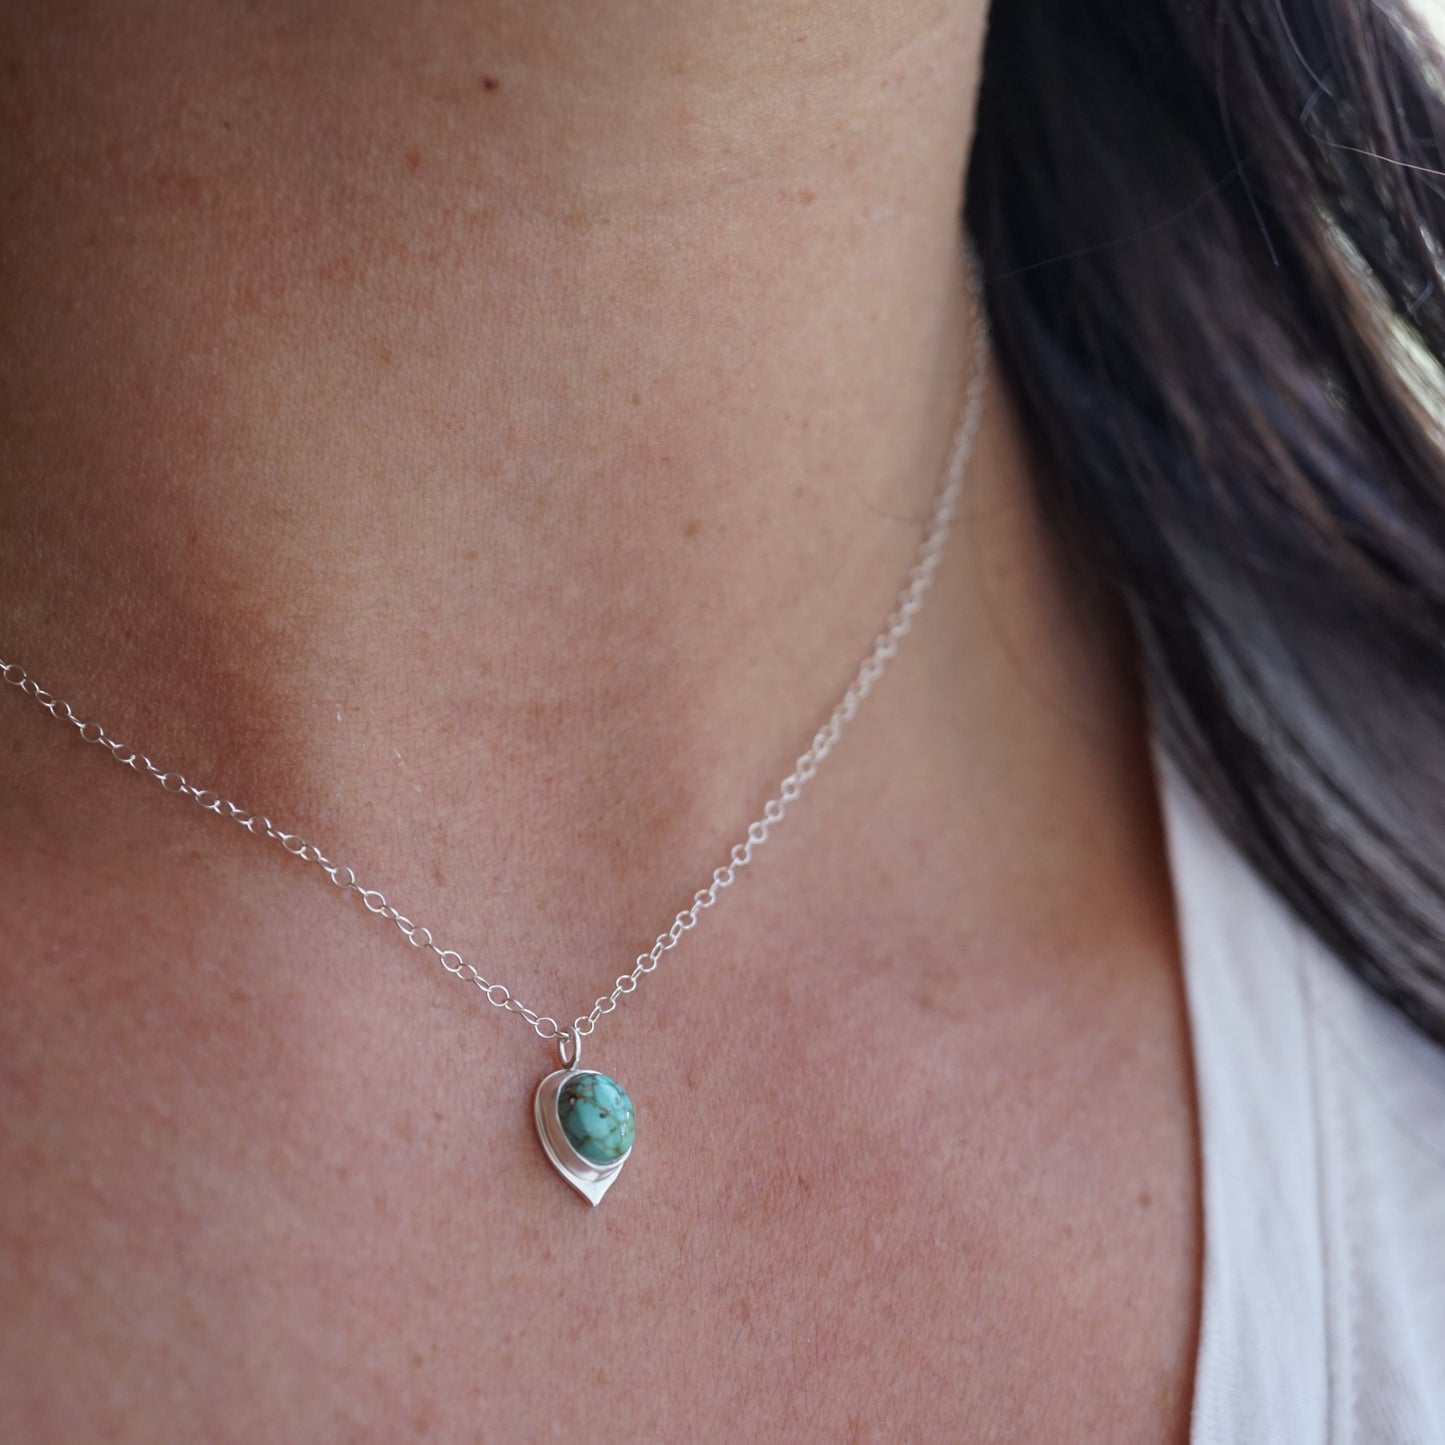 teeny tiny carico lake turquoise + silver necklace - Lumenrose